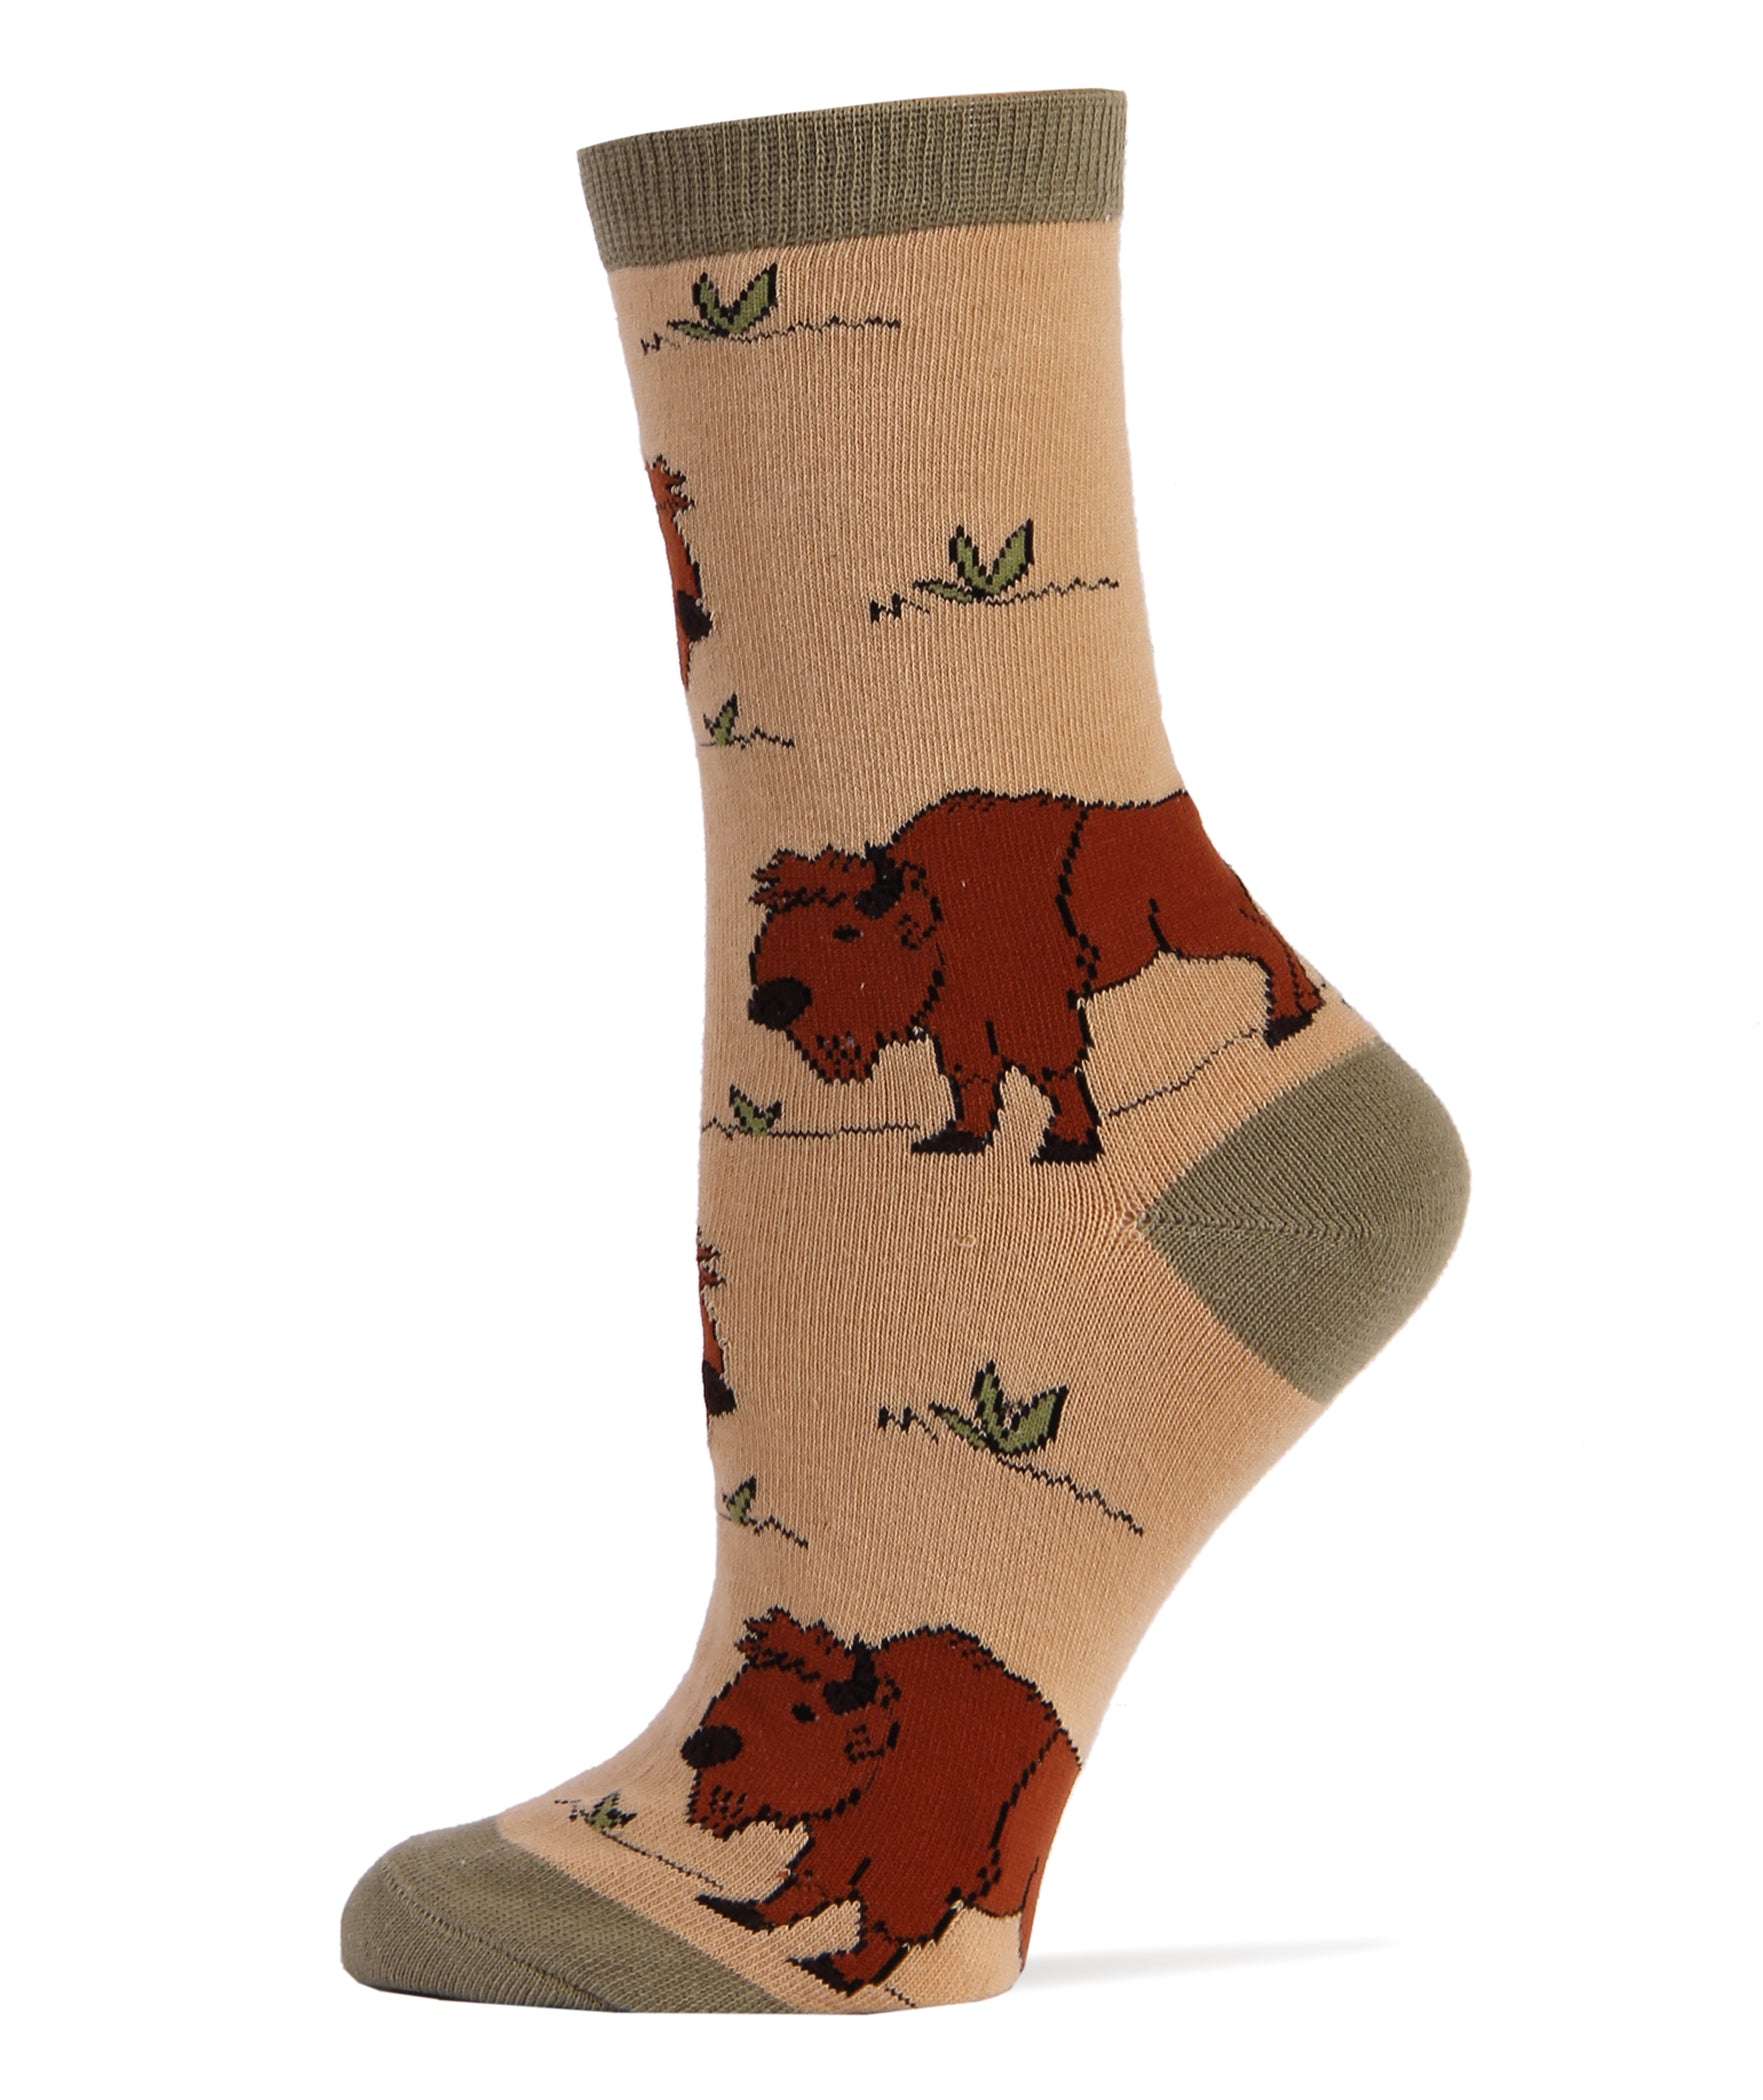 Buffalo Socks | Novelty Crew Socks For Women